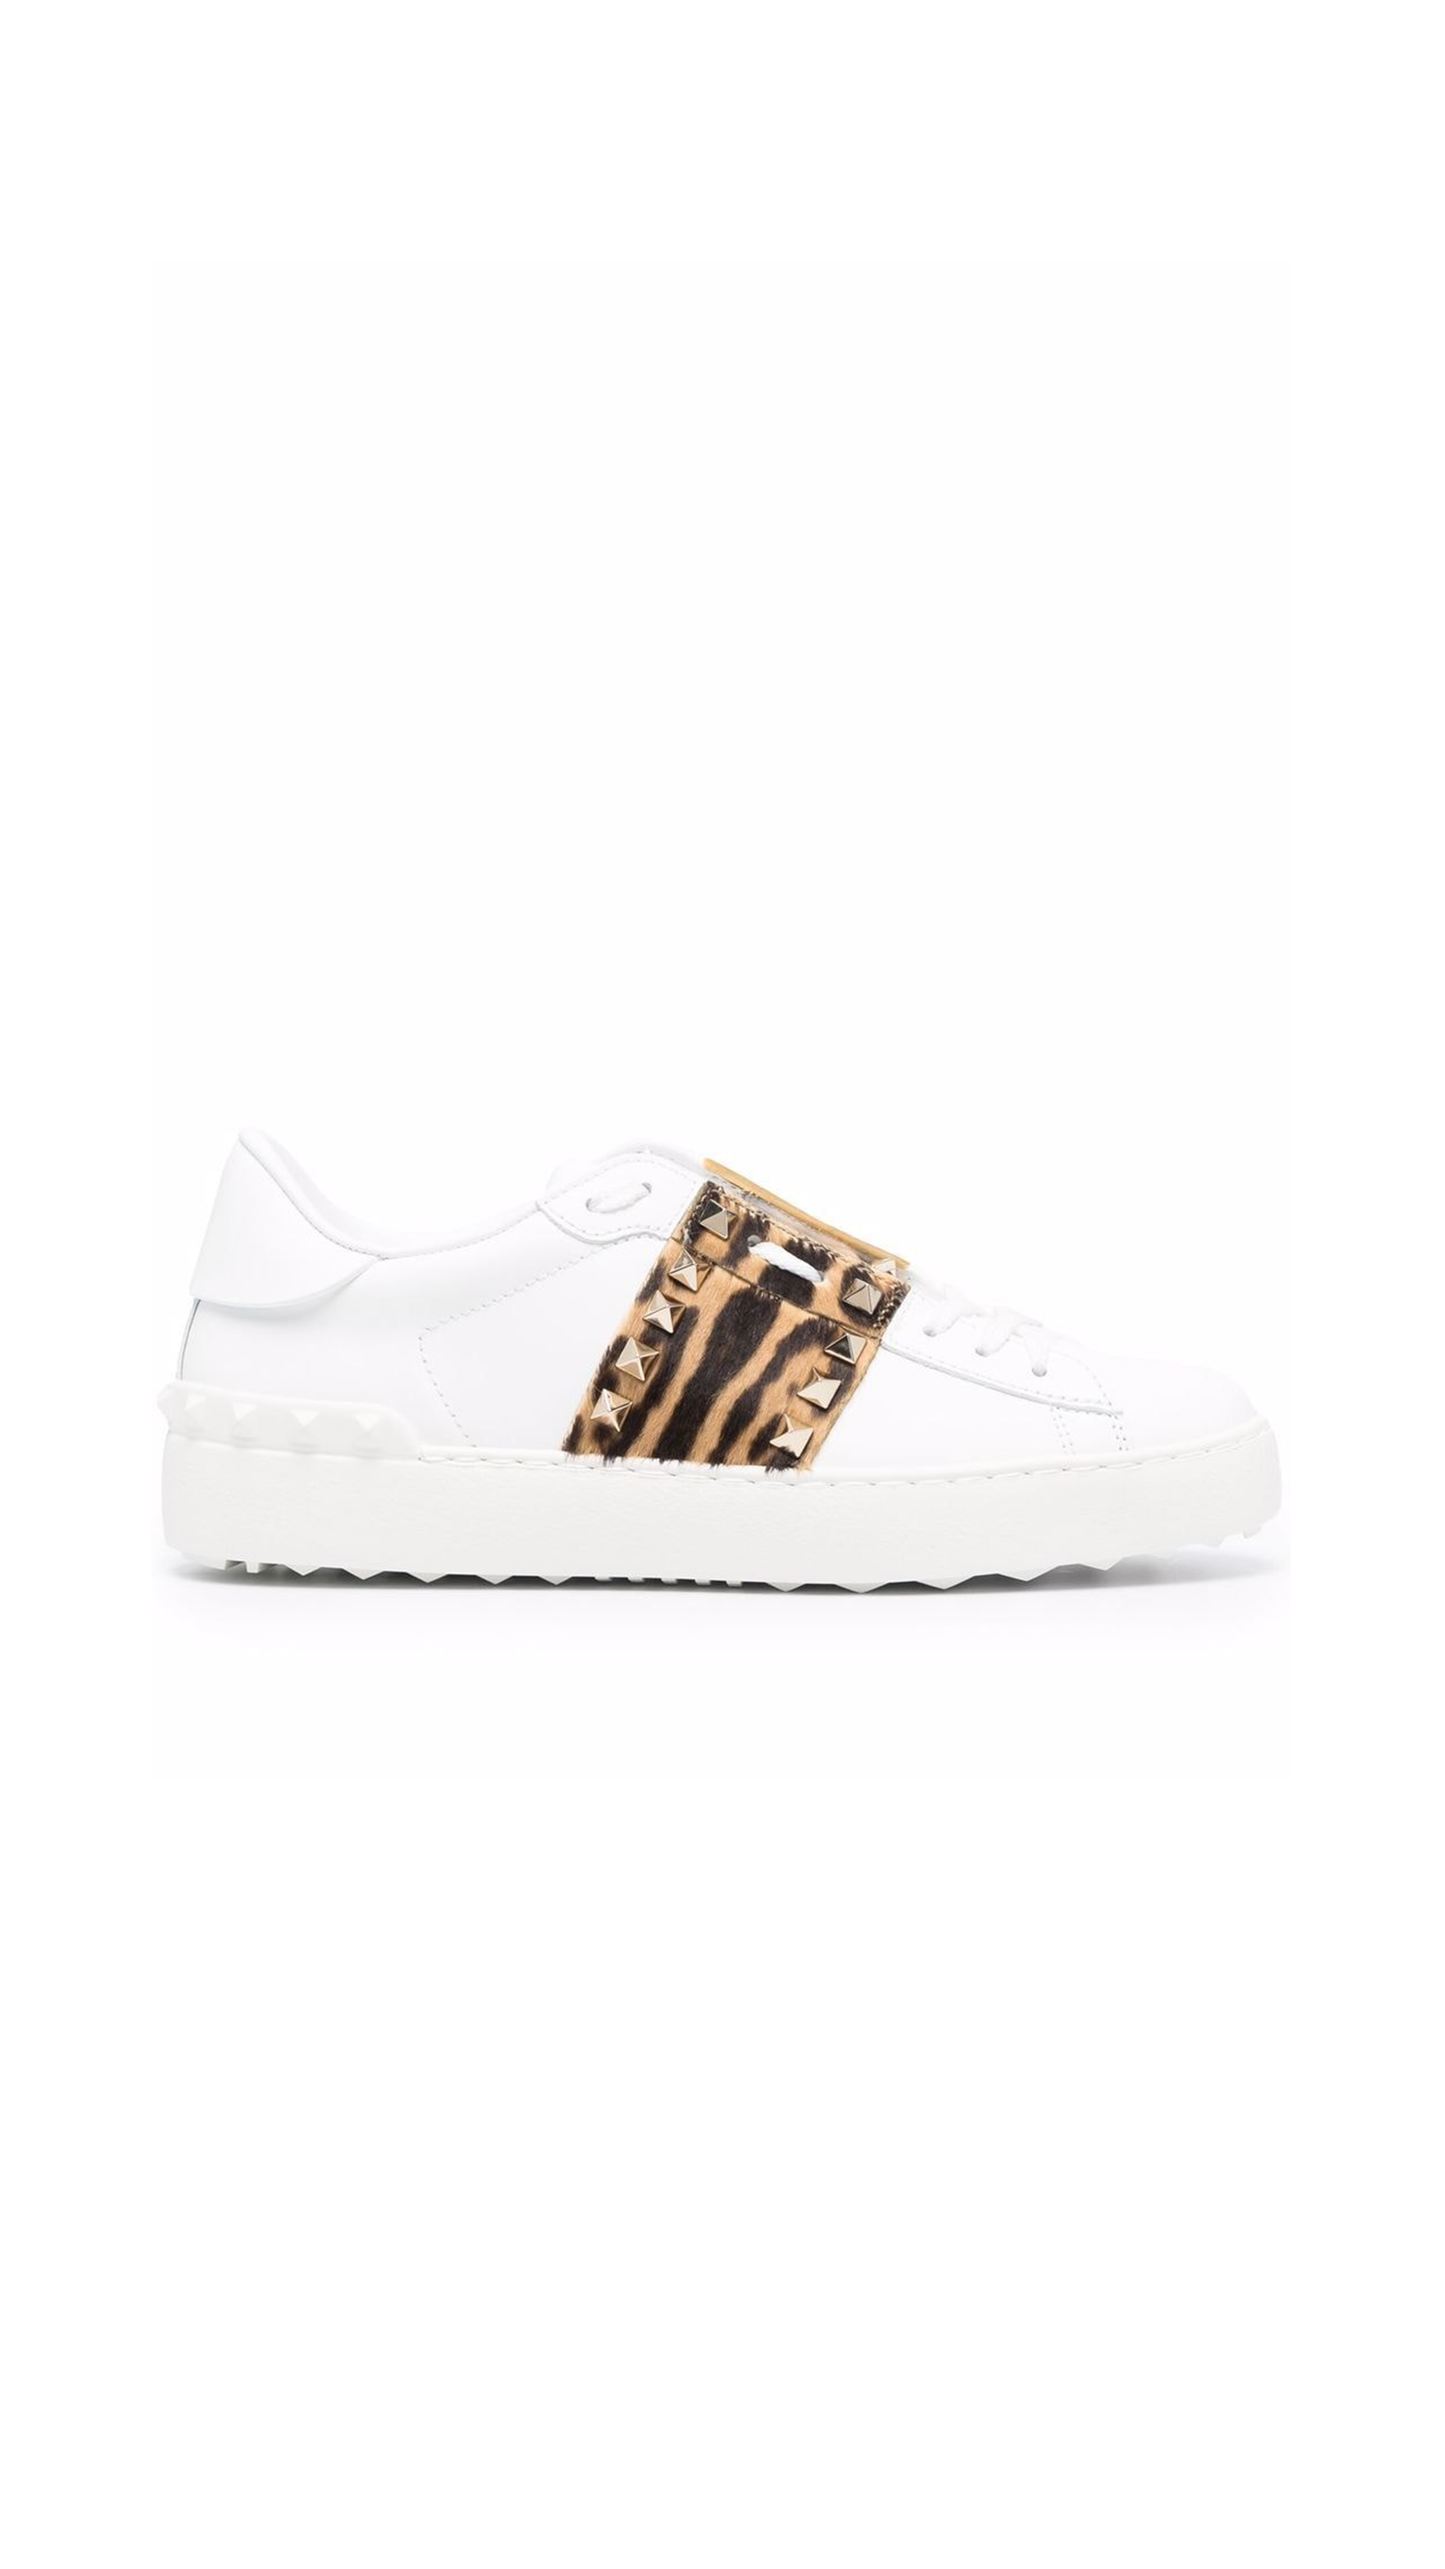 Rockstud Untitled Sneaker In Leopard & White Calfskin Leather - White / Leopard